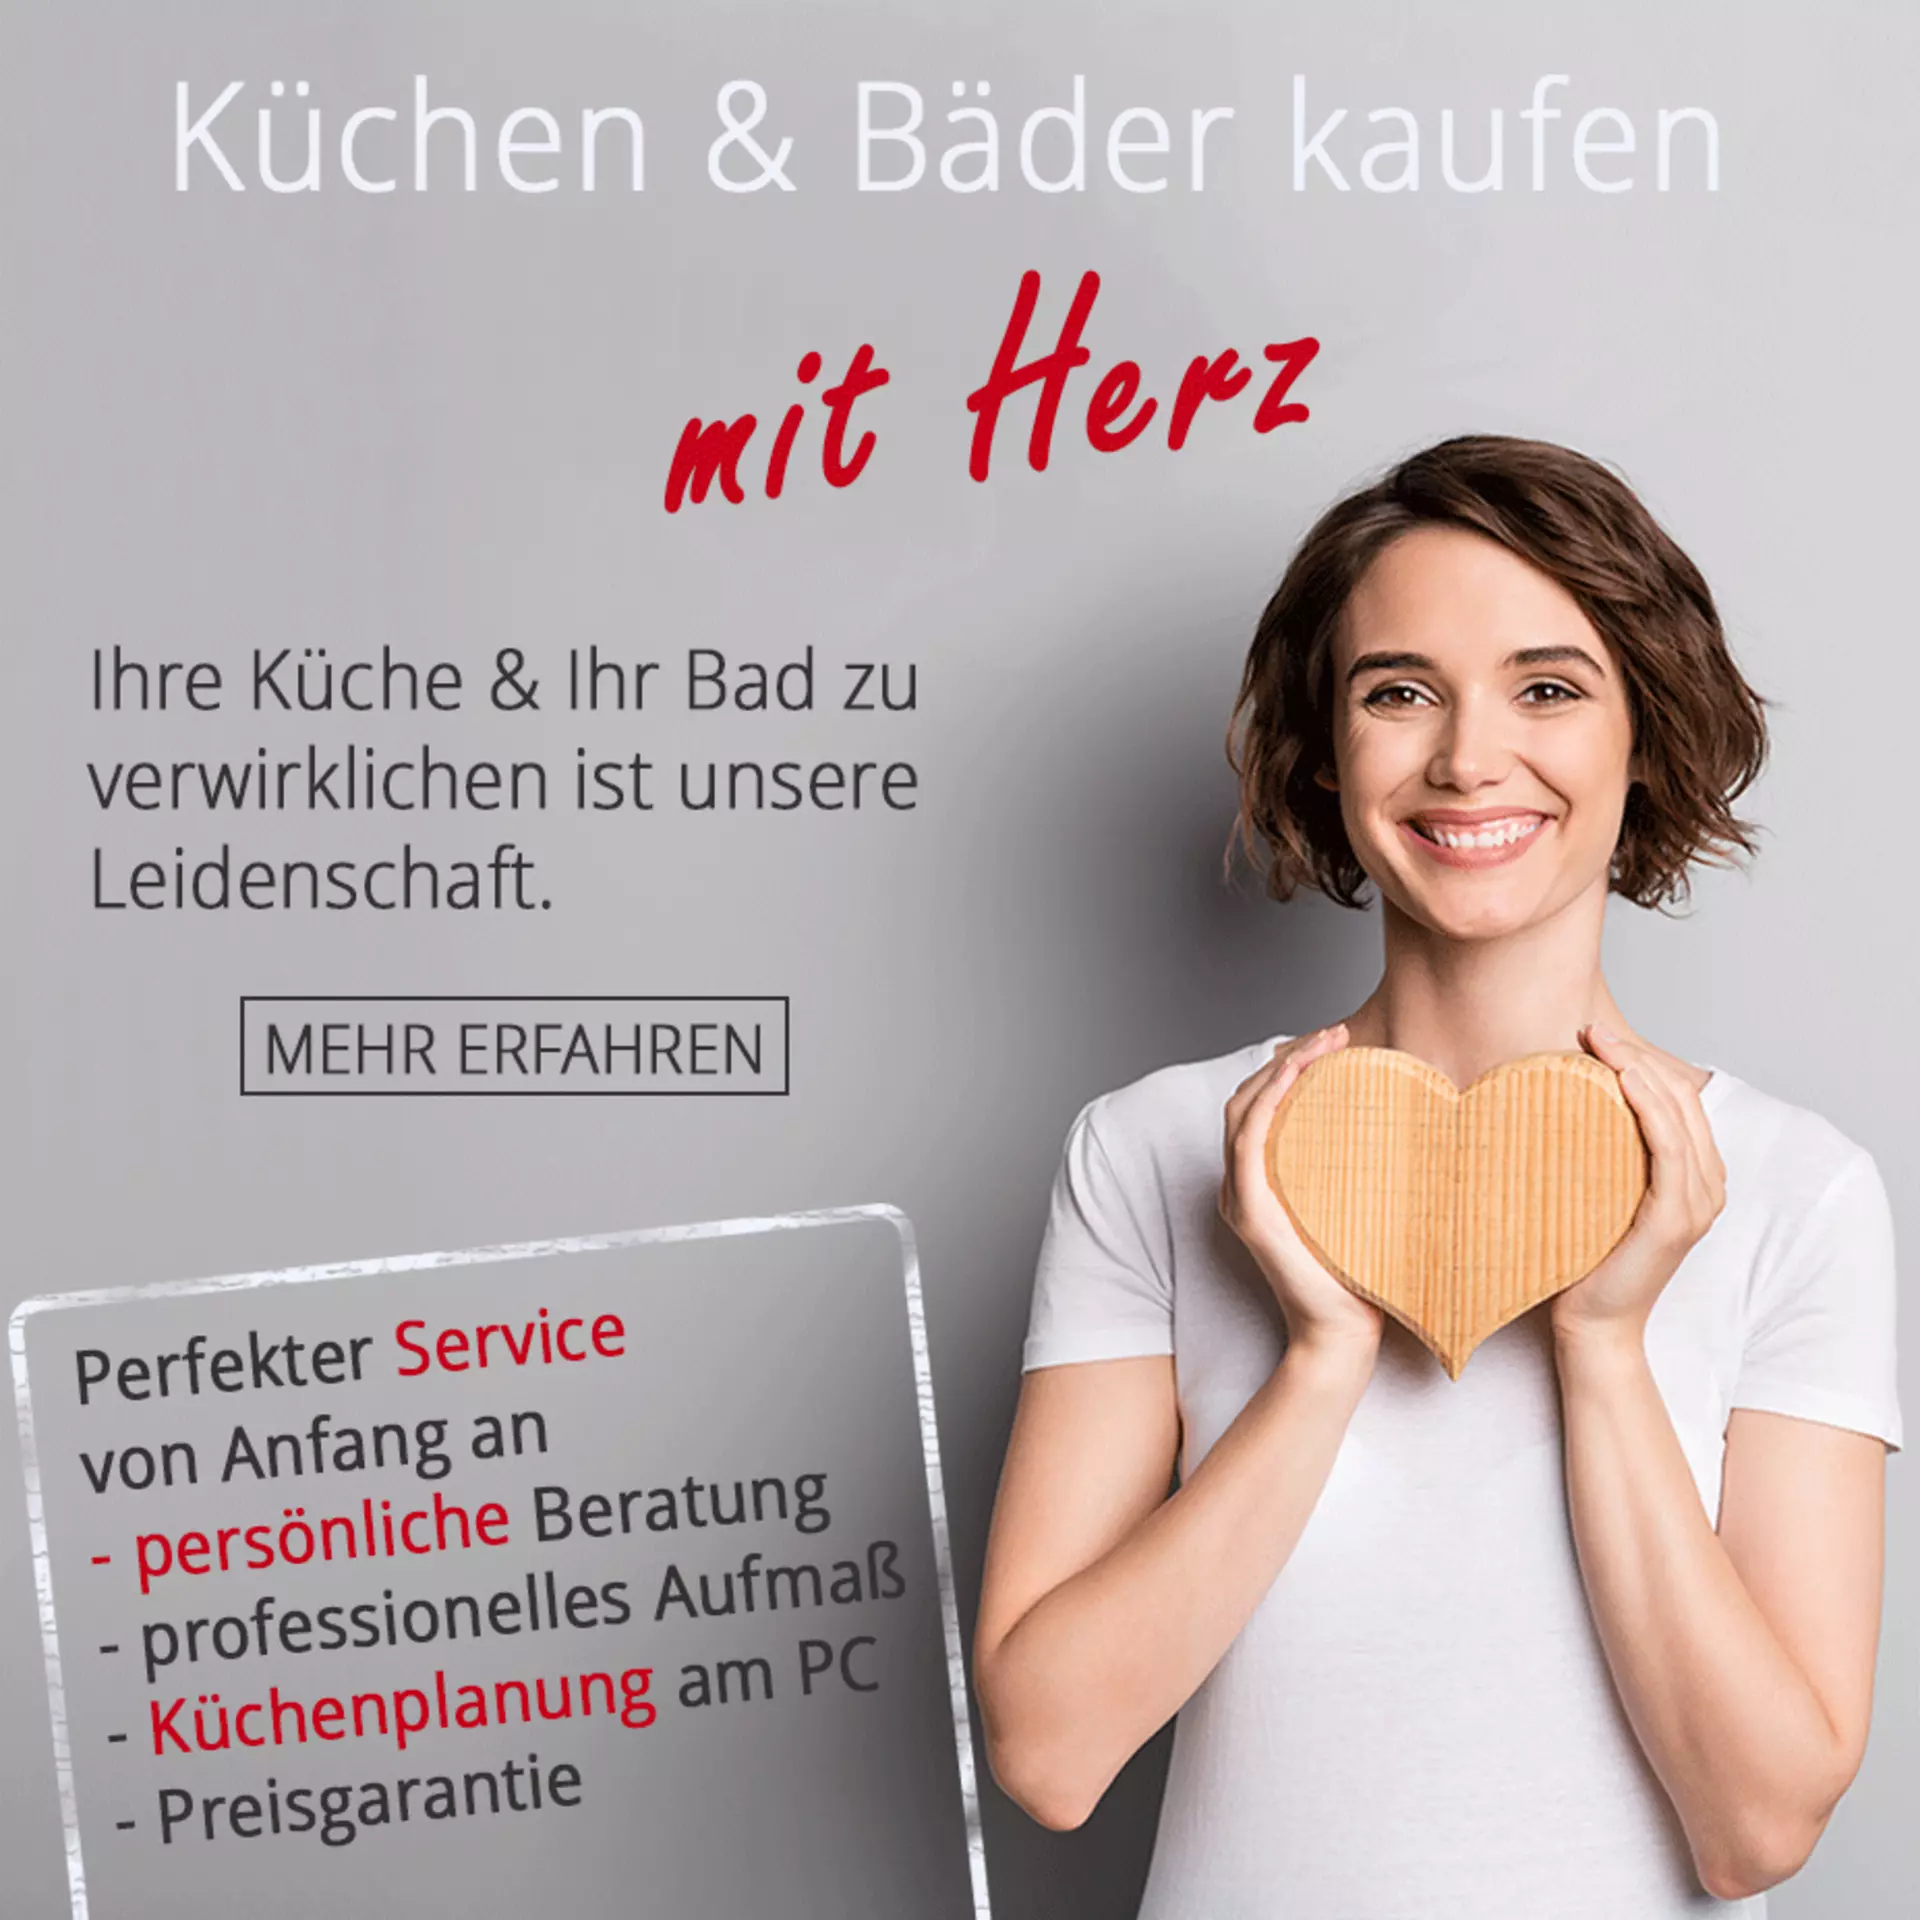 Küchen und Bäder kaufen mit Herz - perfekter Service von Anfang an bei Innovation Küche und Bad in Günzburg